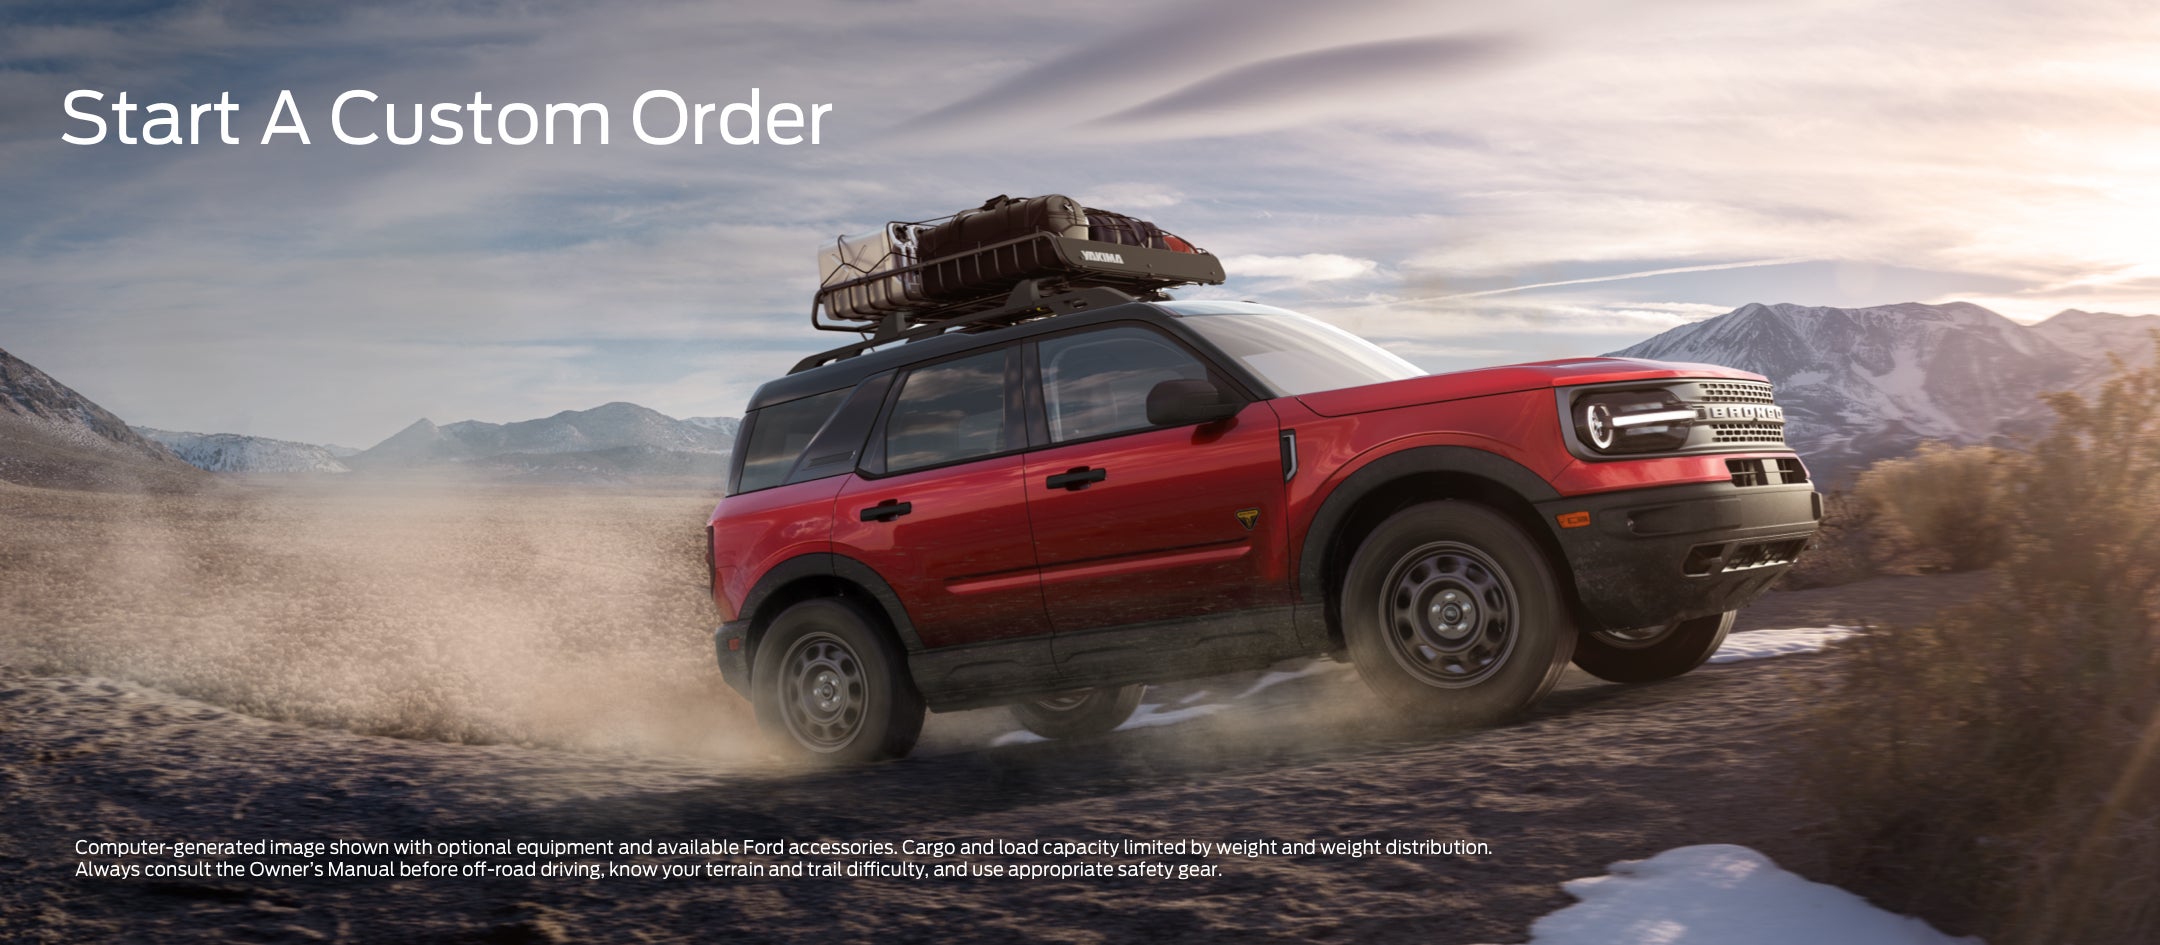 Start a custom order | Ford Demo 1 in Fullerton CA